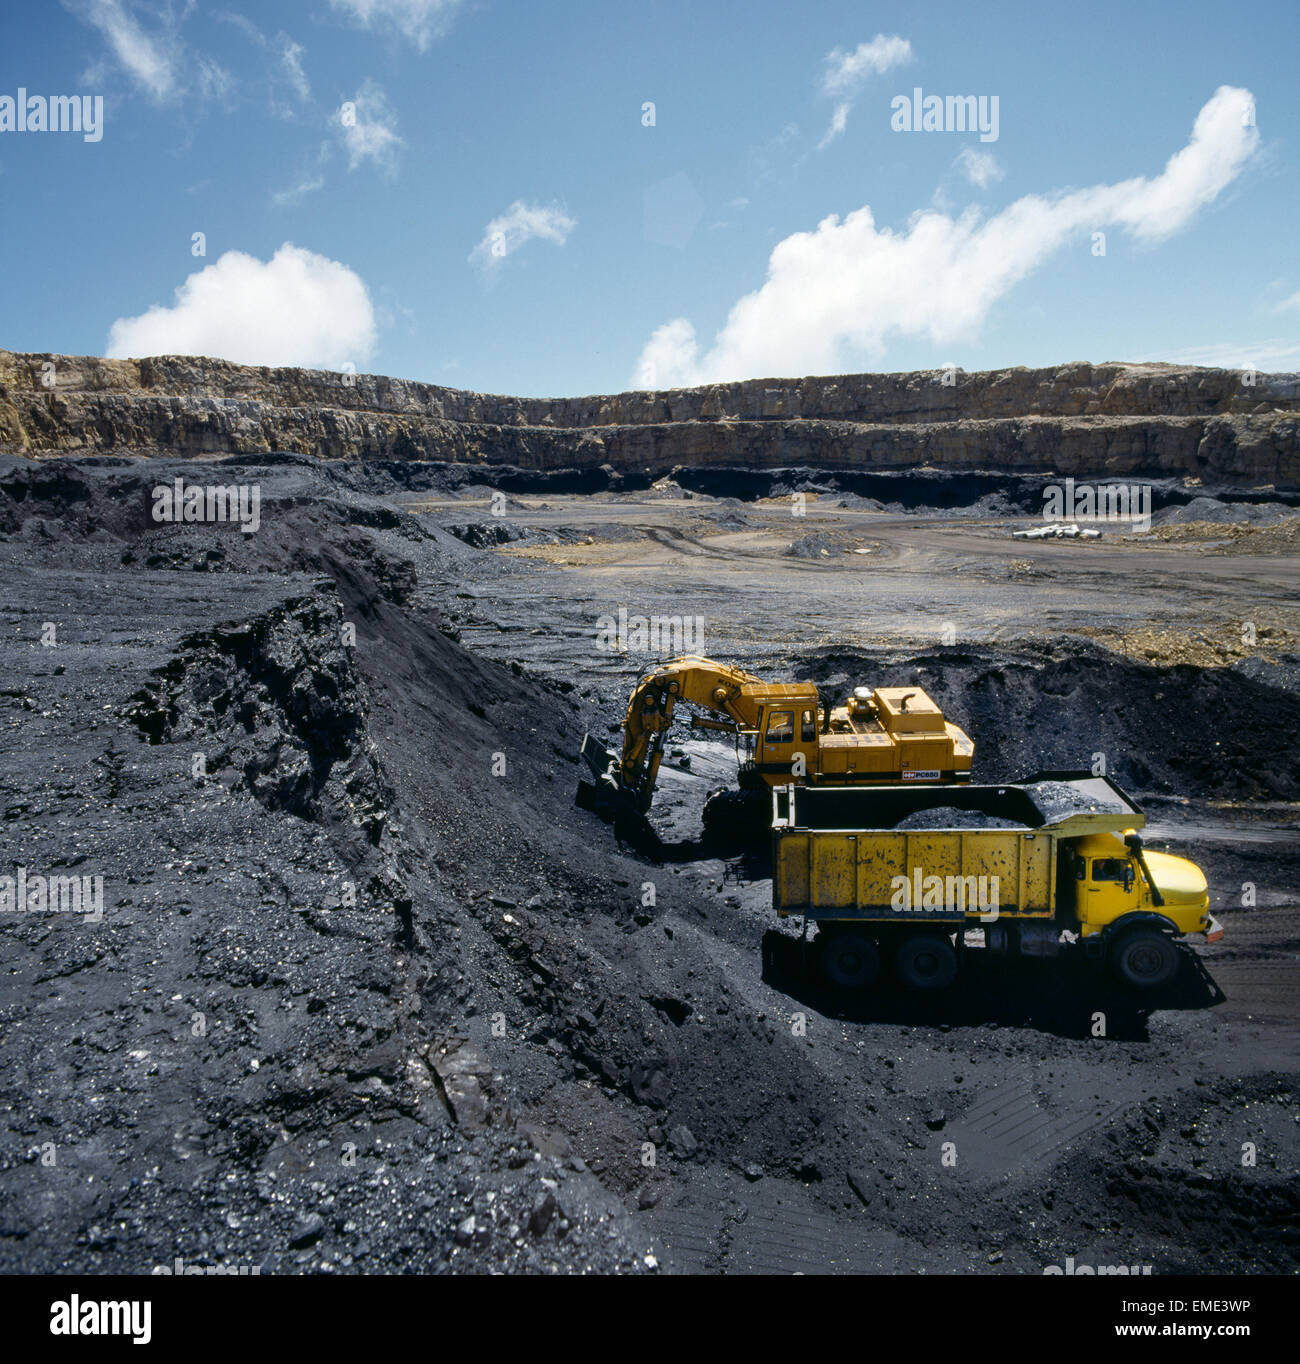 ngakawau open cast coal mine west coast new zealand Stock Photo